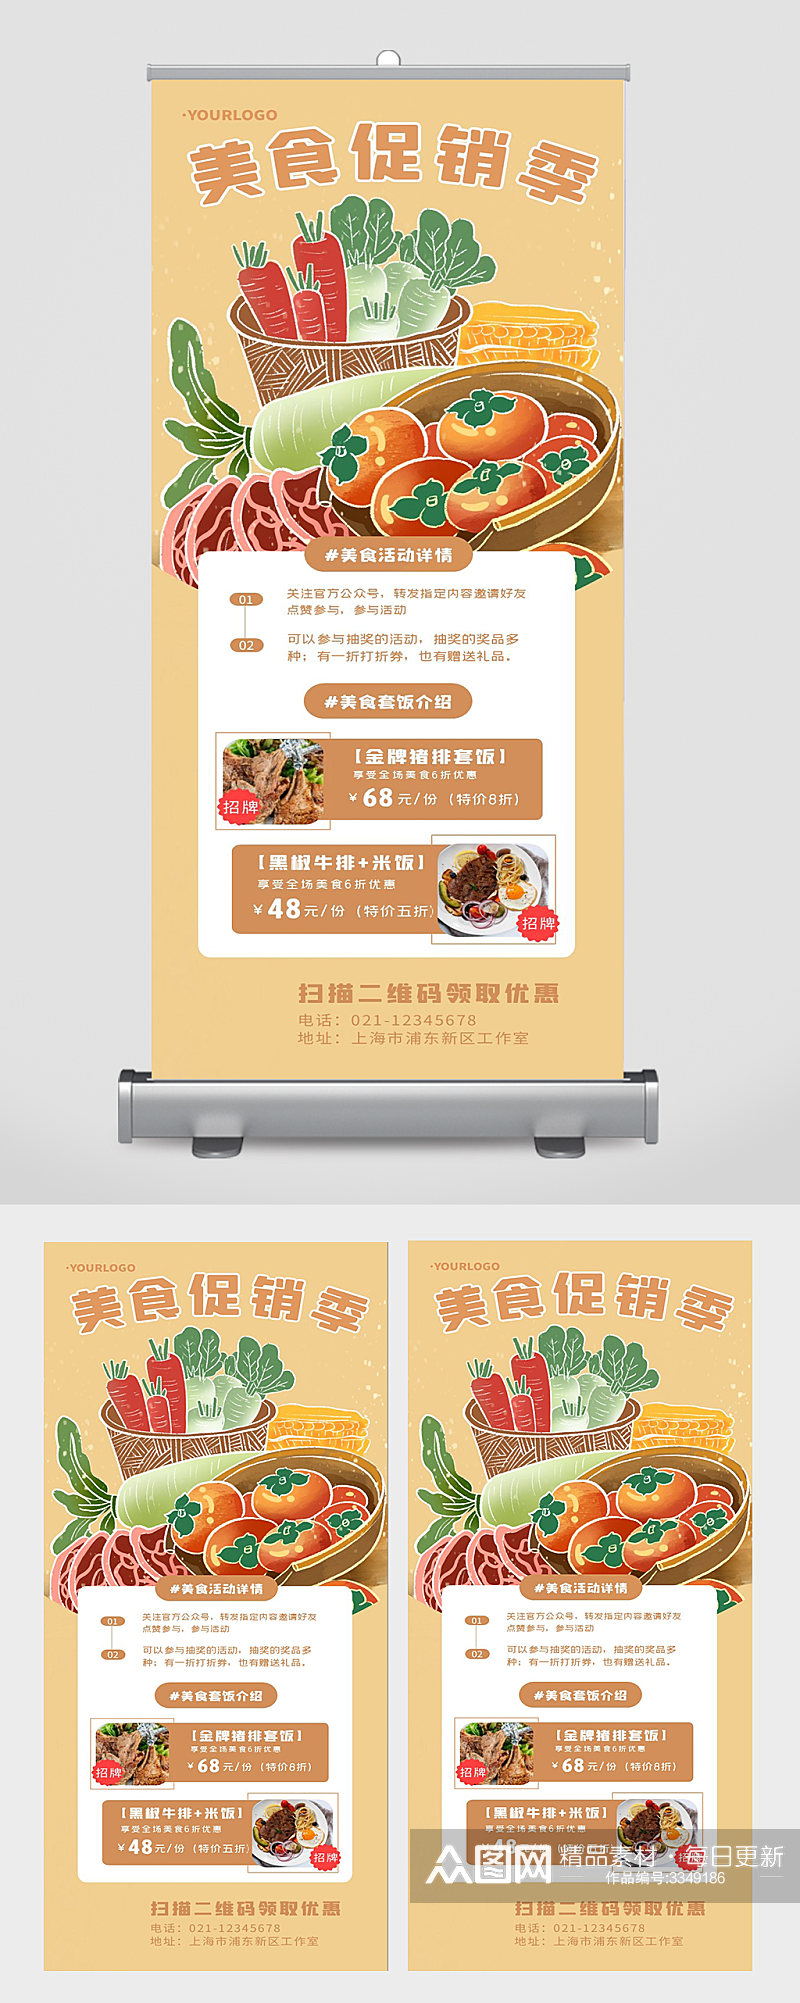 超市促销蔬菜水果美食活动宣传宣传海报素材